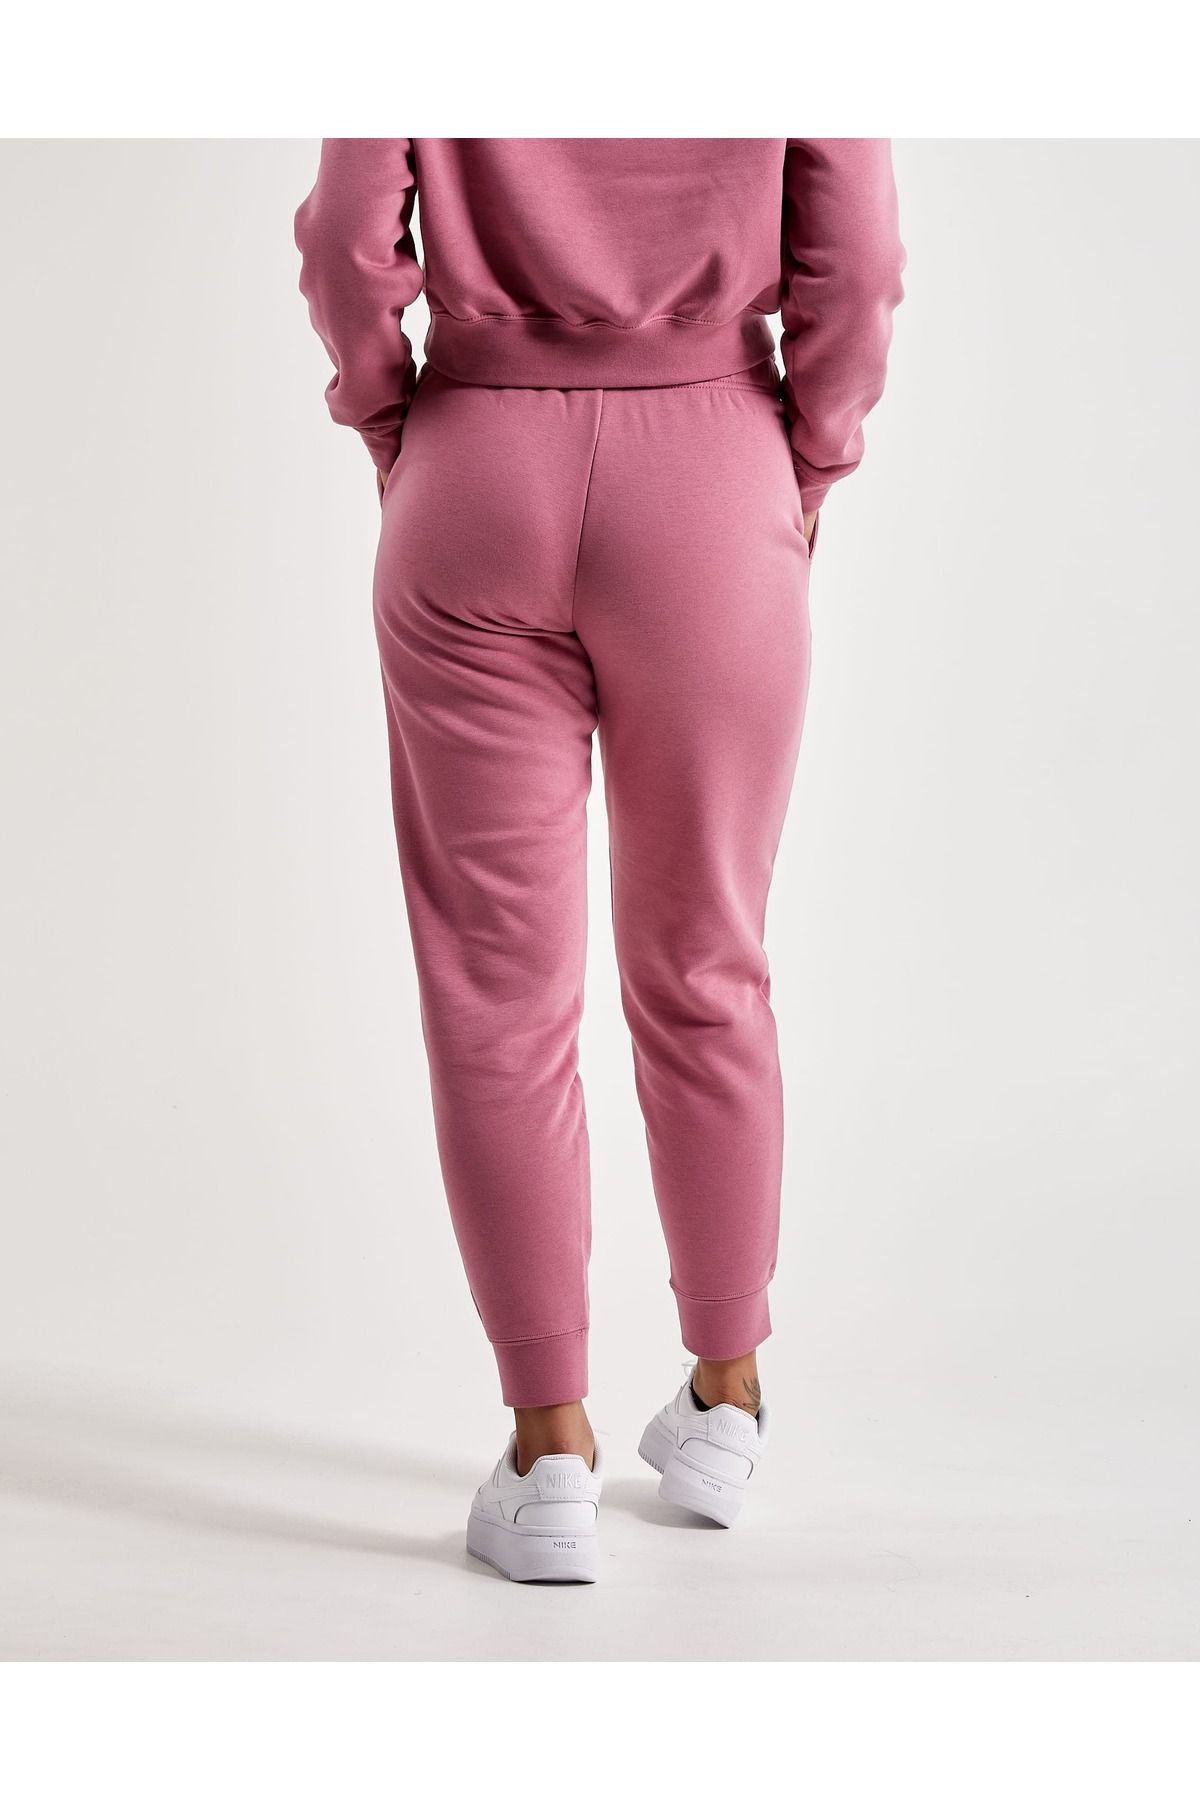 Nike Sportswear Stardust Fleece Women's Pink Sweatpants